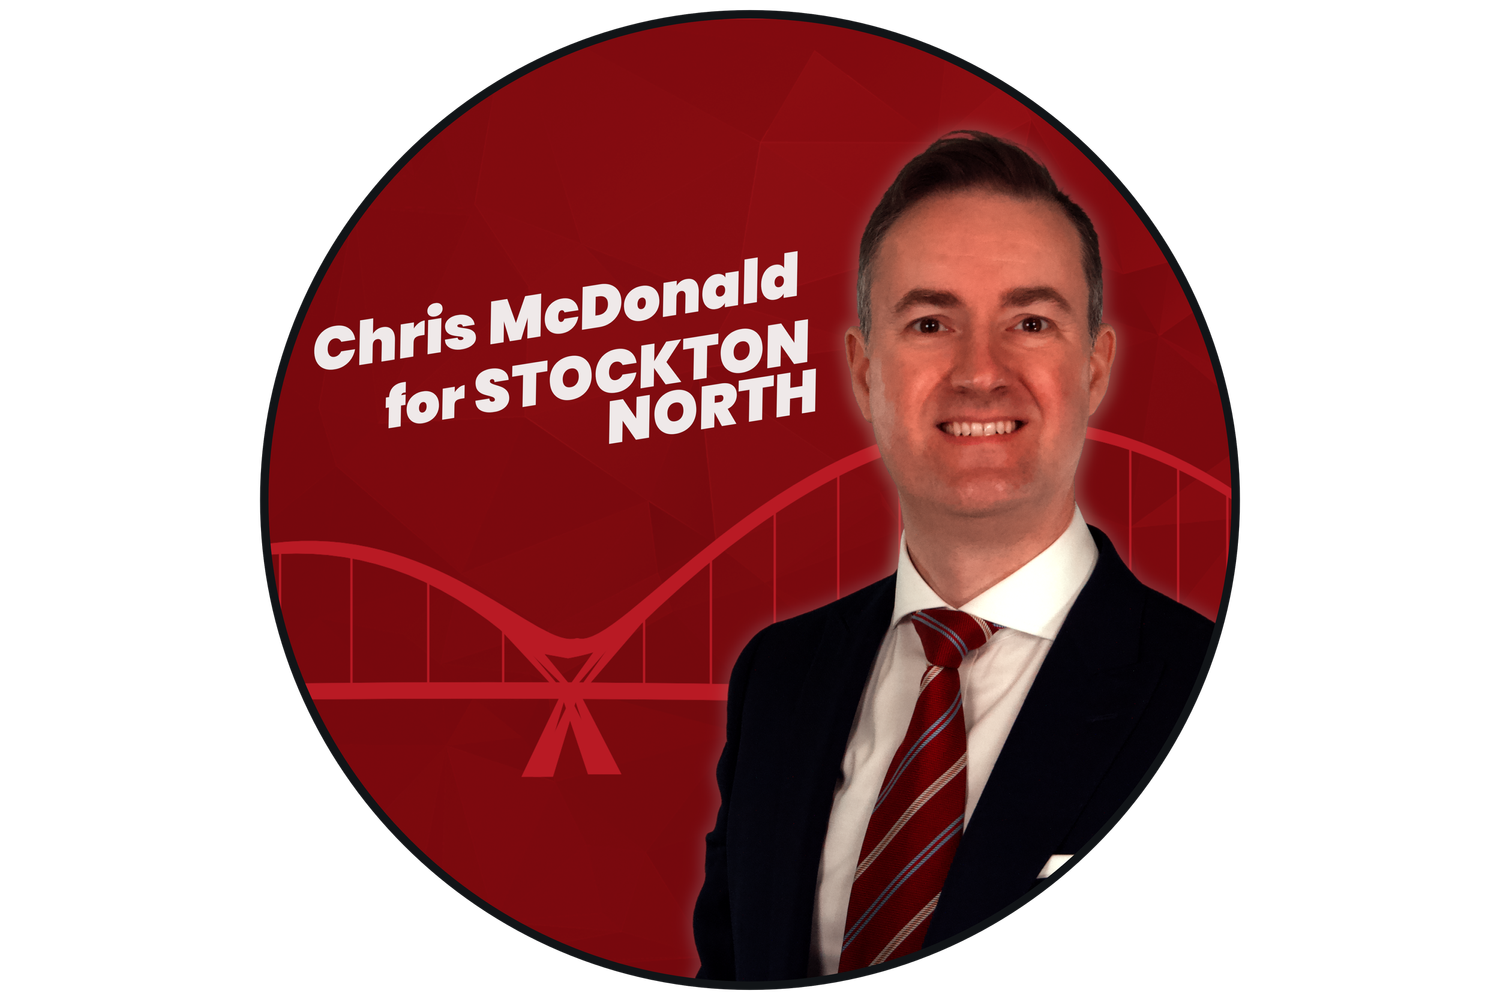 Chris McDonald